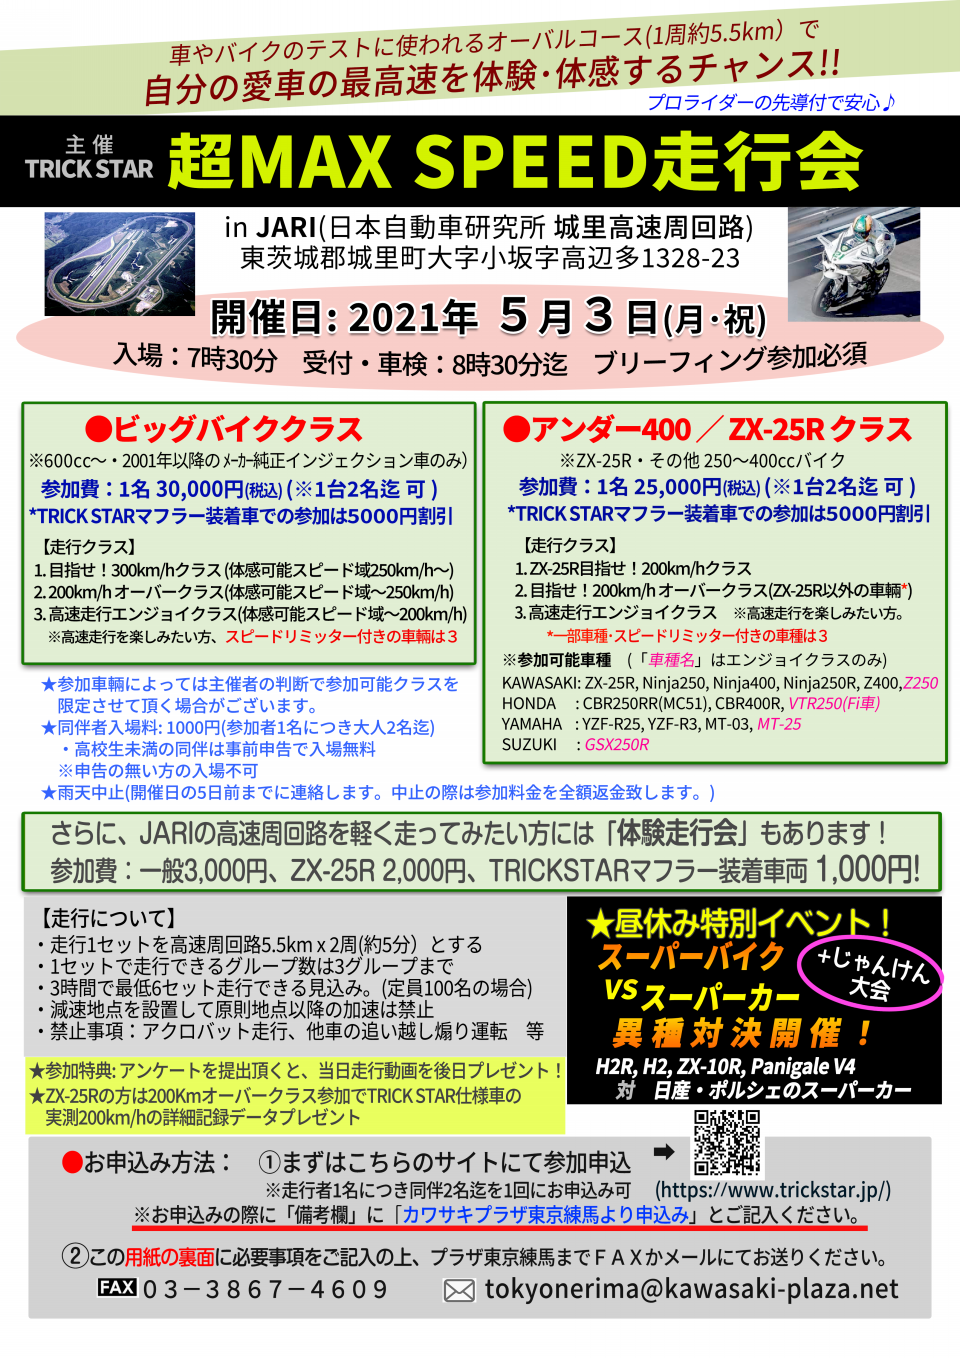 愛車で最高速体験【超MAX SPEED走行会】 | カワサキプラザ東京 